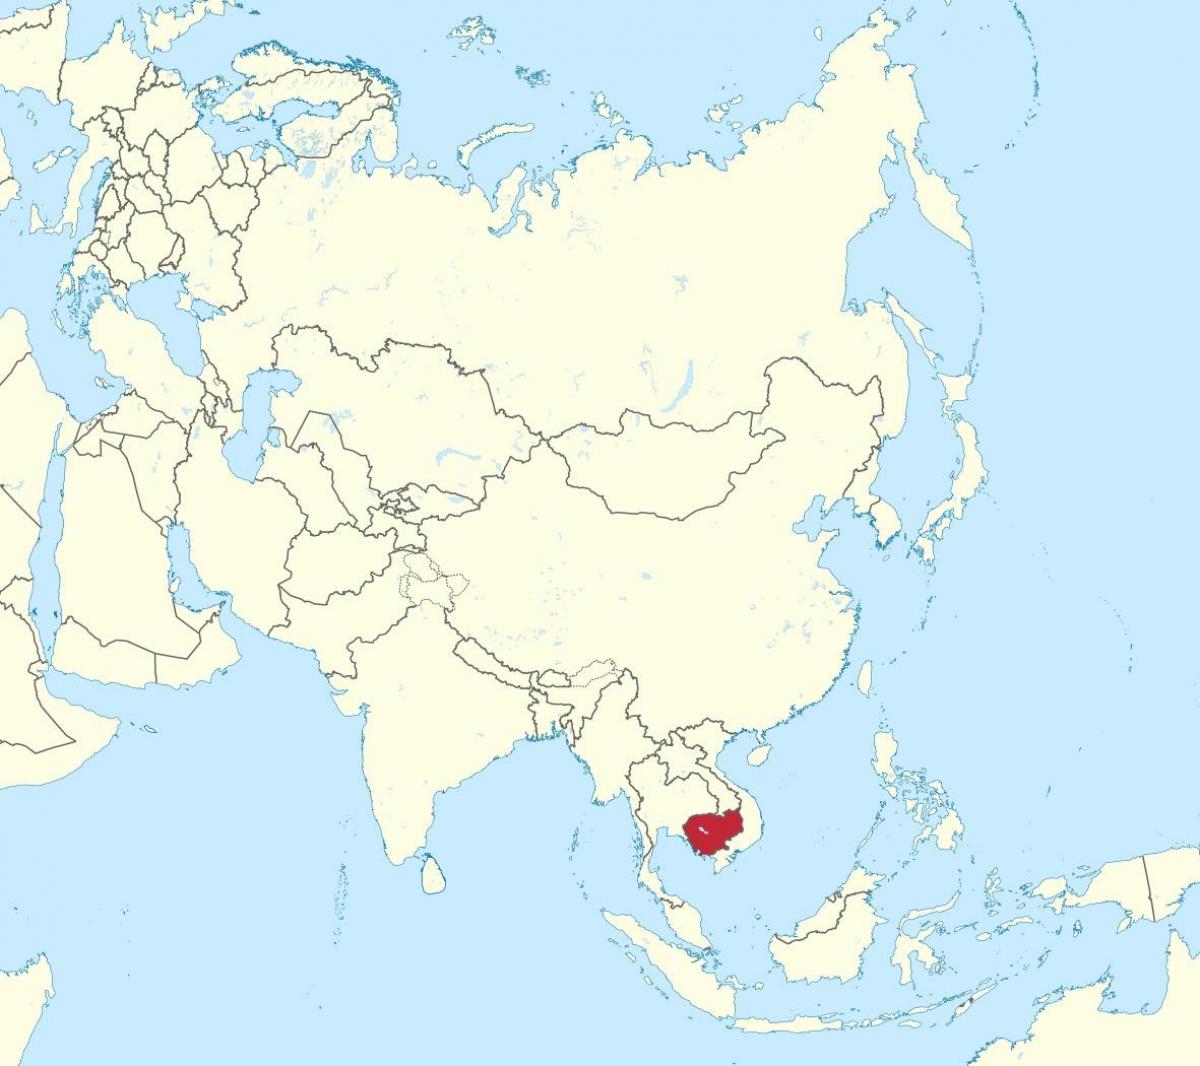 Mapa je iz Kambodže u aziji